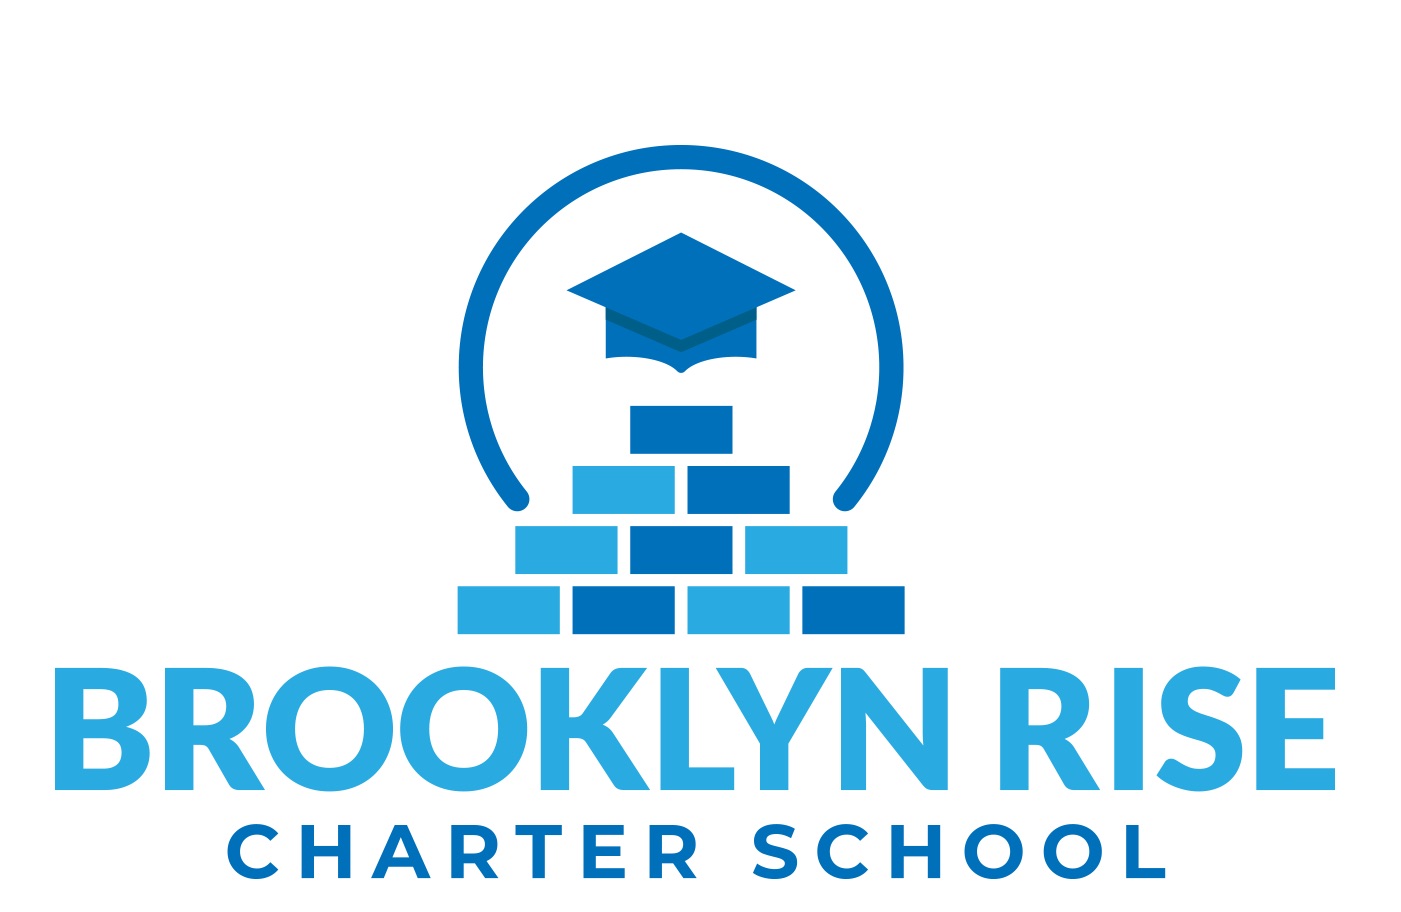 Brooklyn RISE Charter School logo